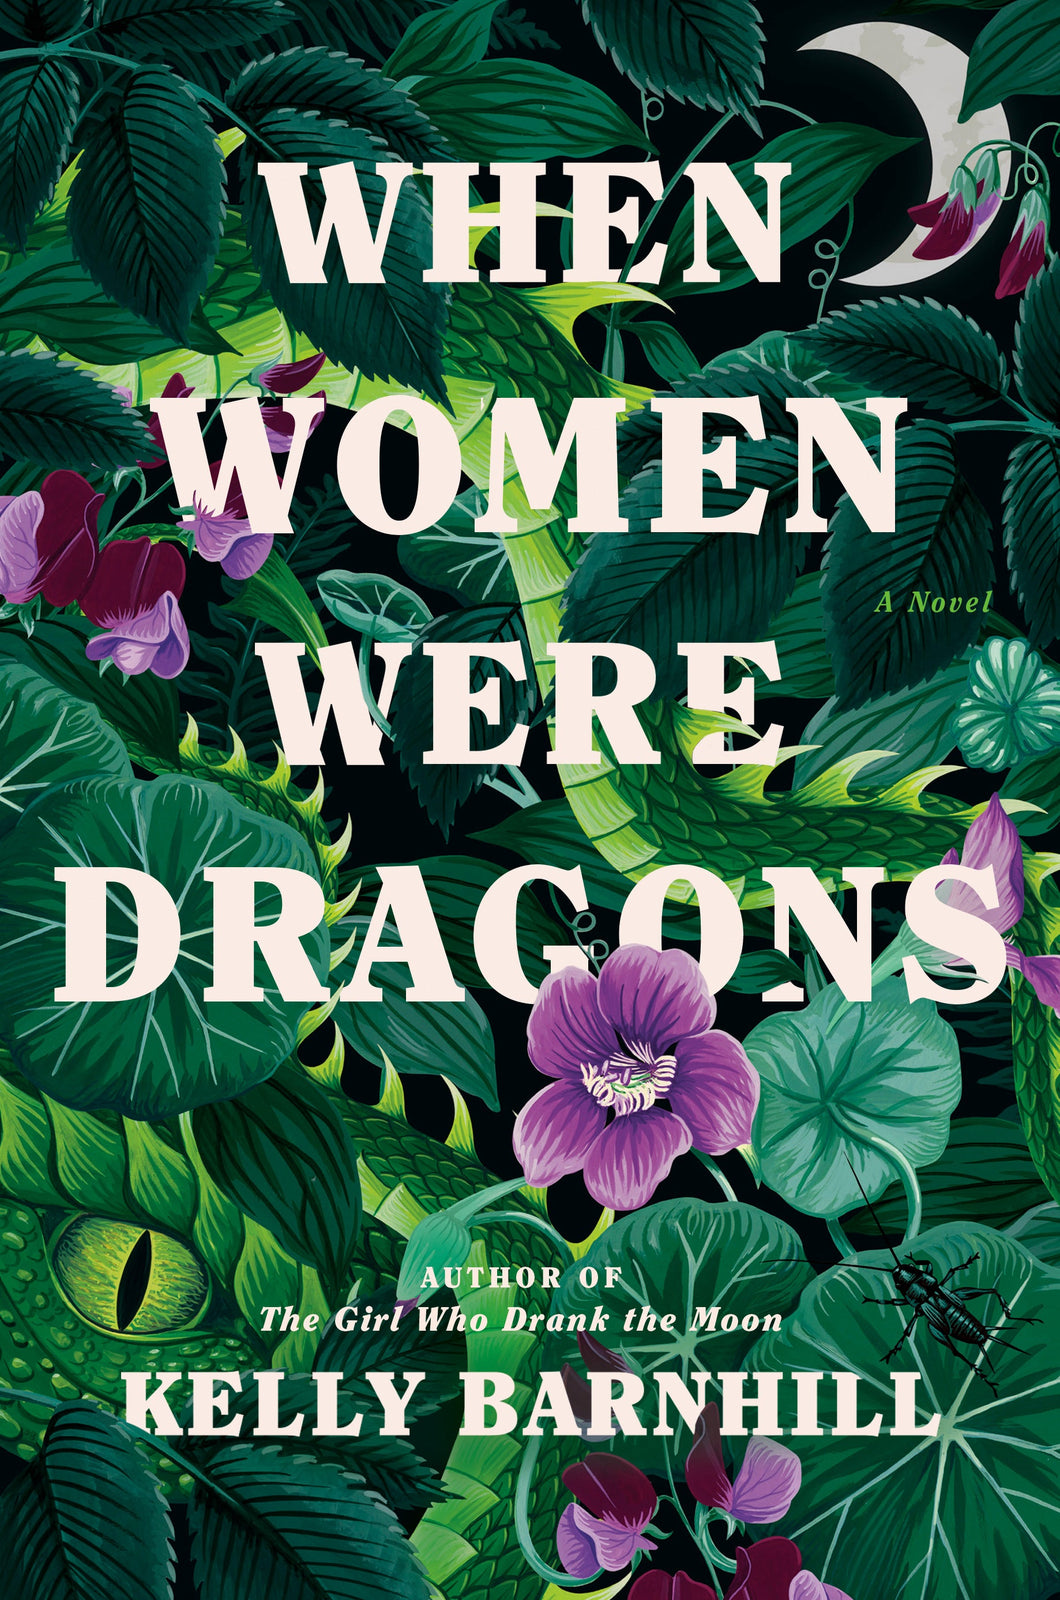 When Women Were Dragons - Kelly Barnhill